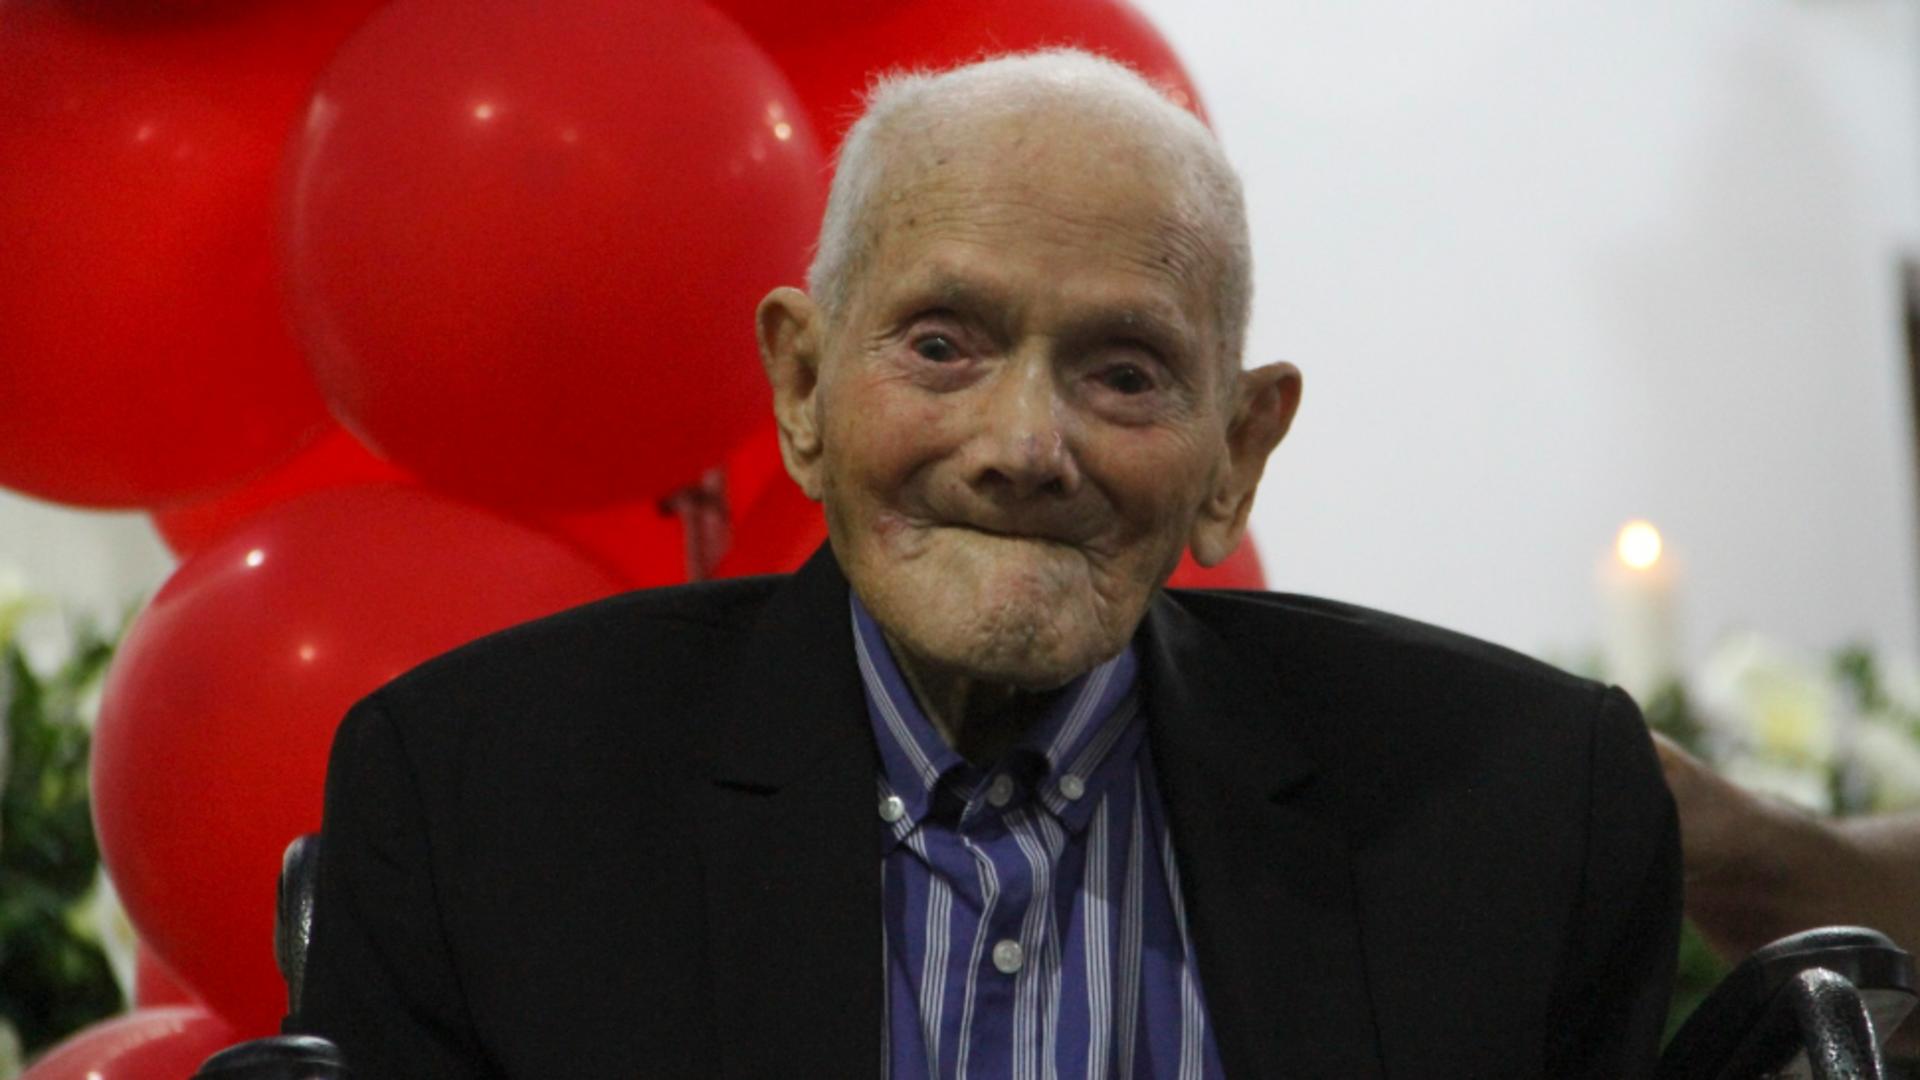 A murit cel mai vârstnic bărbat din lume. Avea 114 ani și 41 de nepoți: poveste de viață impresionantă